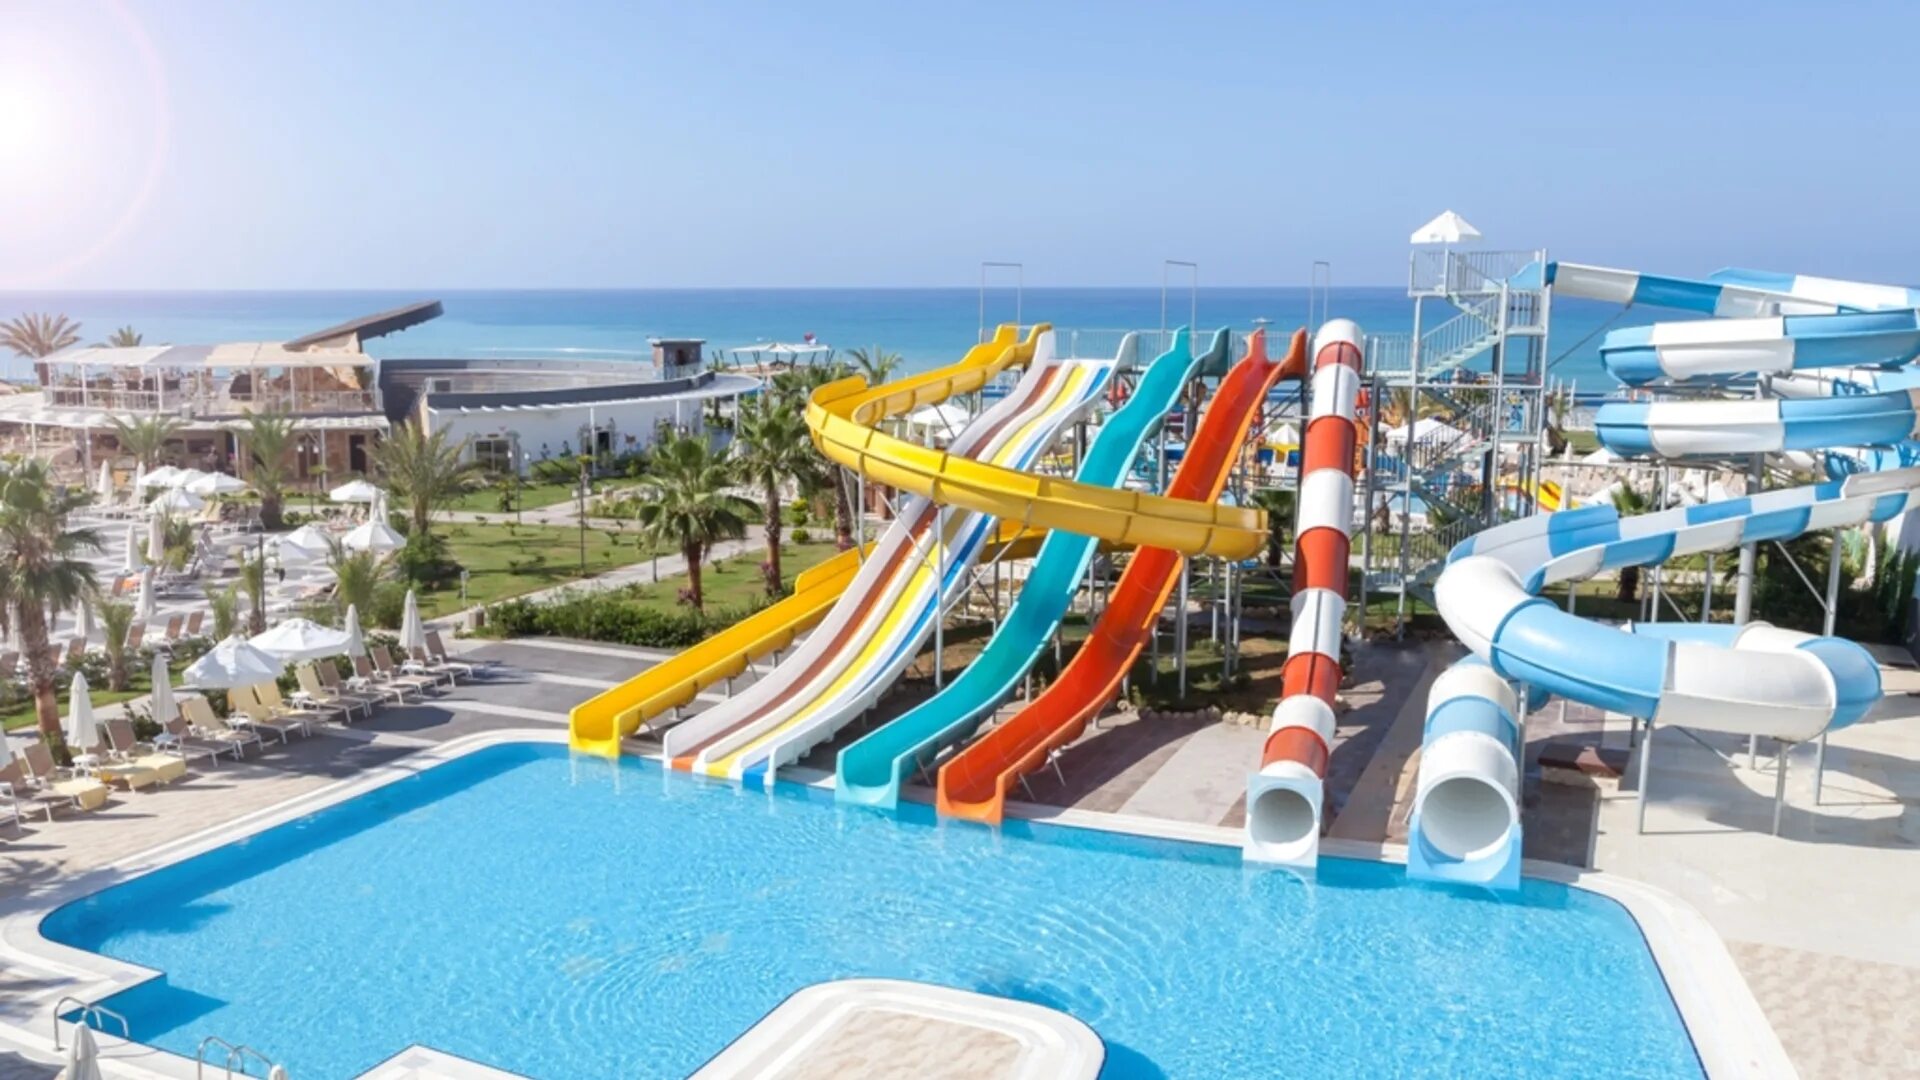 Сиа ворлд. Отель Seaden Sea Planet Resort & Spa. Отели в Турции Sea Planet Resort Spa 5. Сиде си планет Резорт Сиде. Sea Planet Resort Spa 5 Сиде.